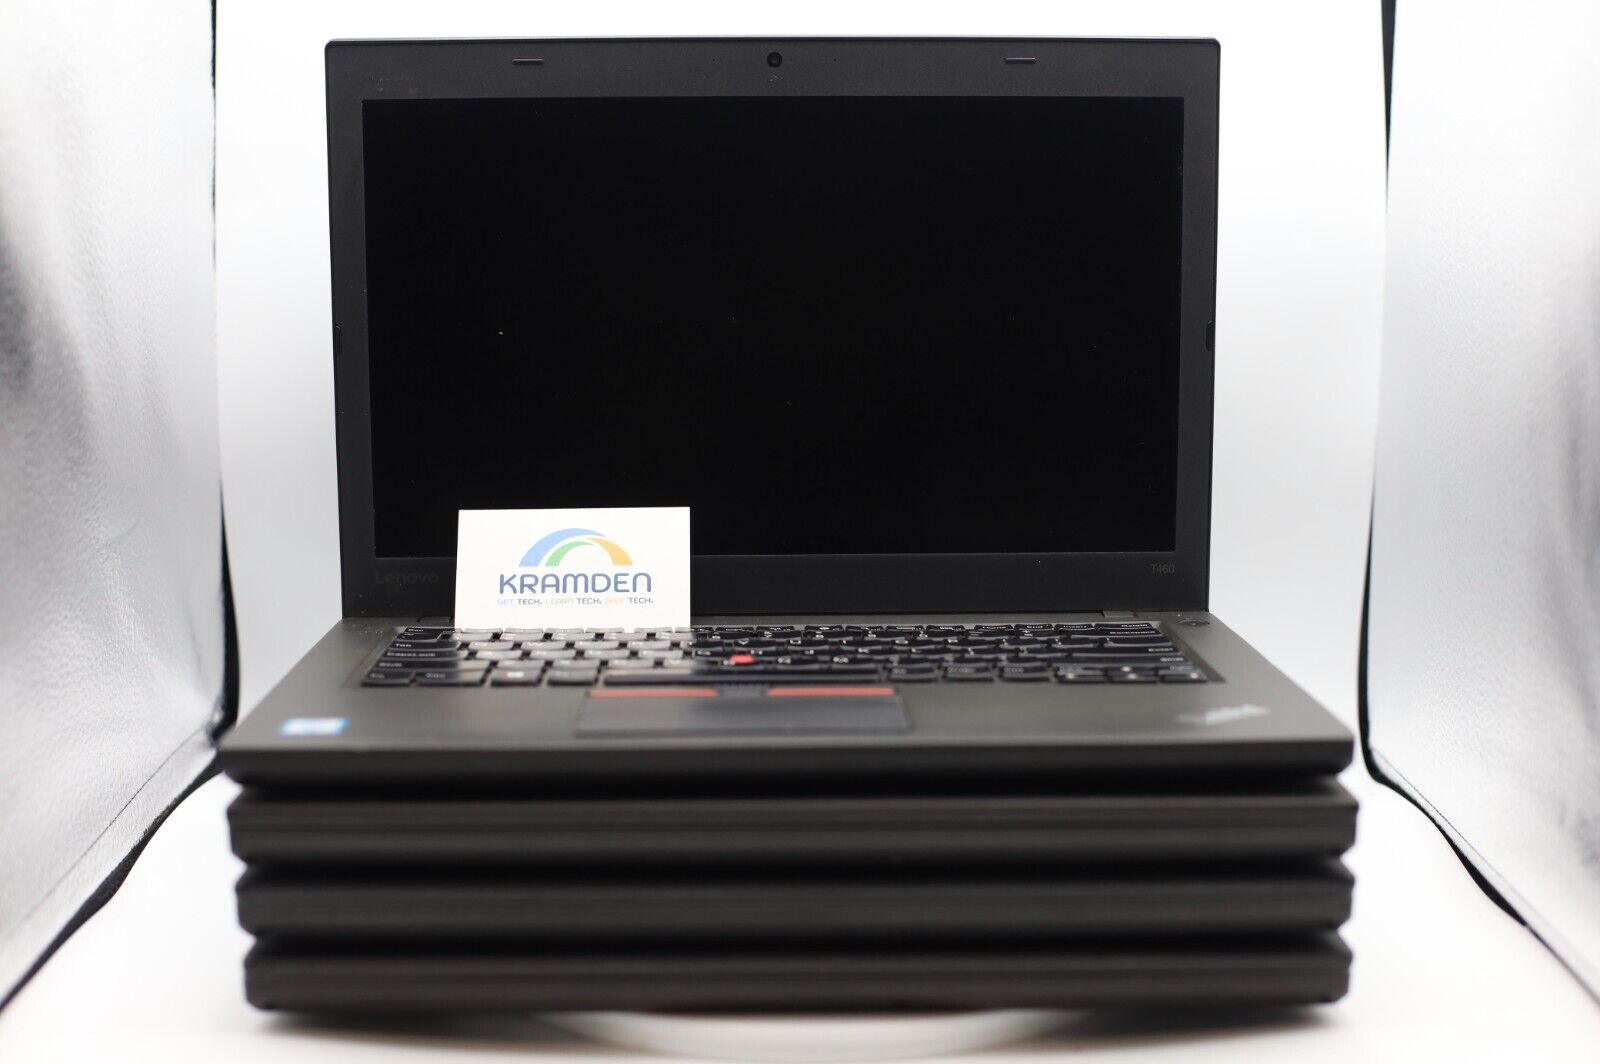 Lot of 4 Lenovo ThinkPad T460 Laptops i7-6600U, 8GB RAM, No HDD/OS, Grade F, E1